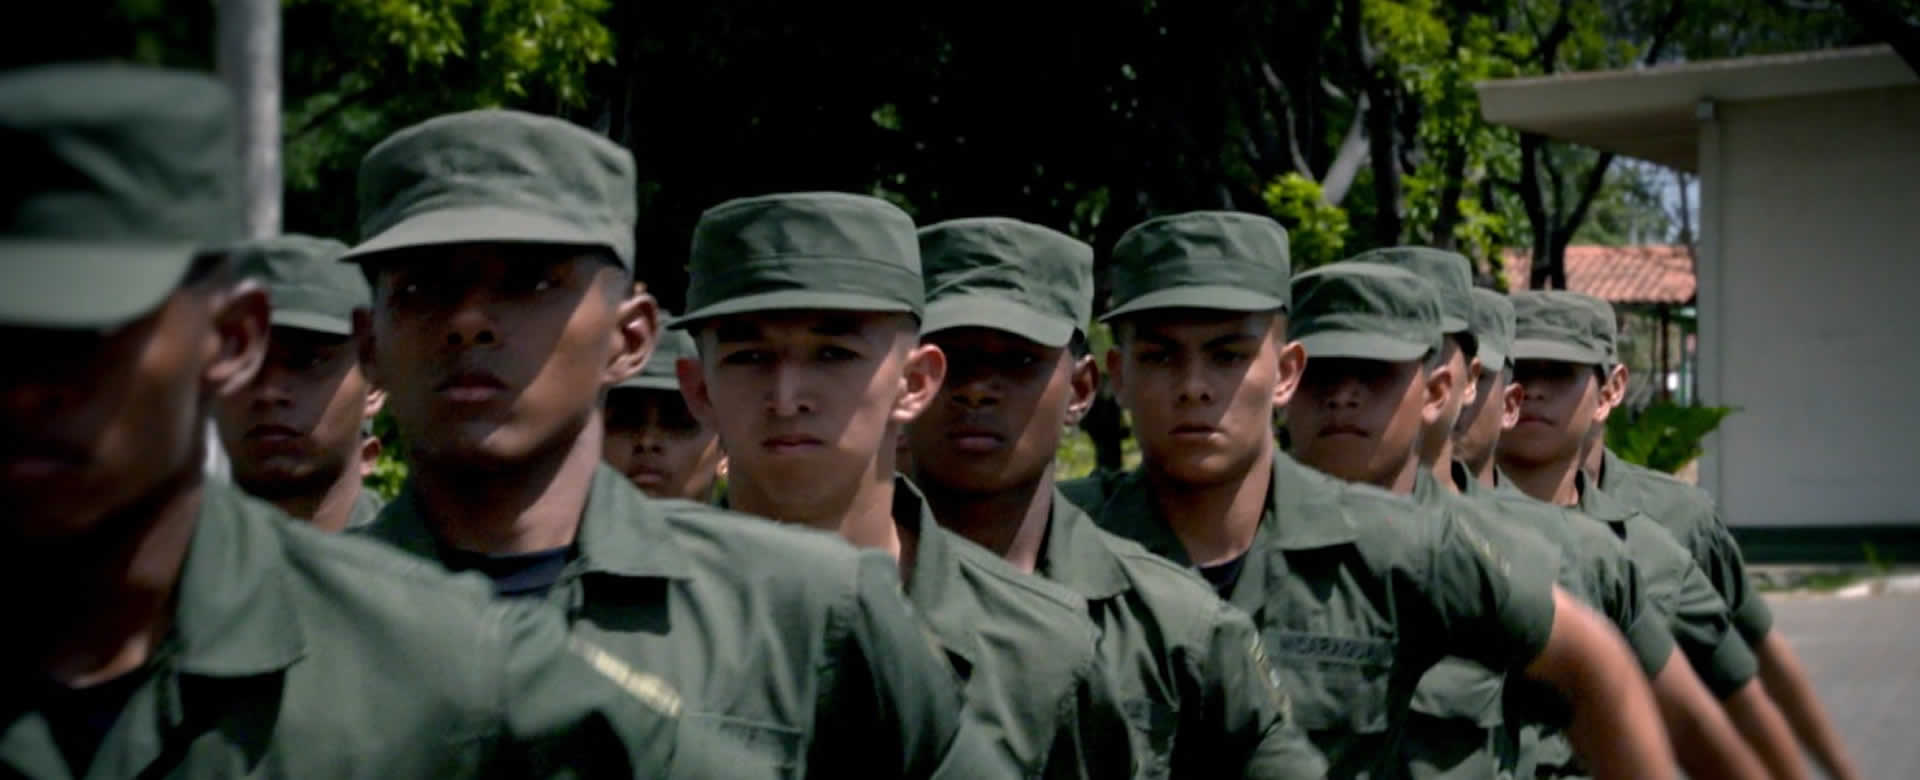 Legado del General Sandino inspira a soldados del ejército de Nicaragua